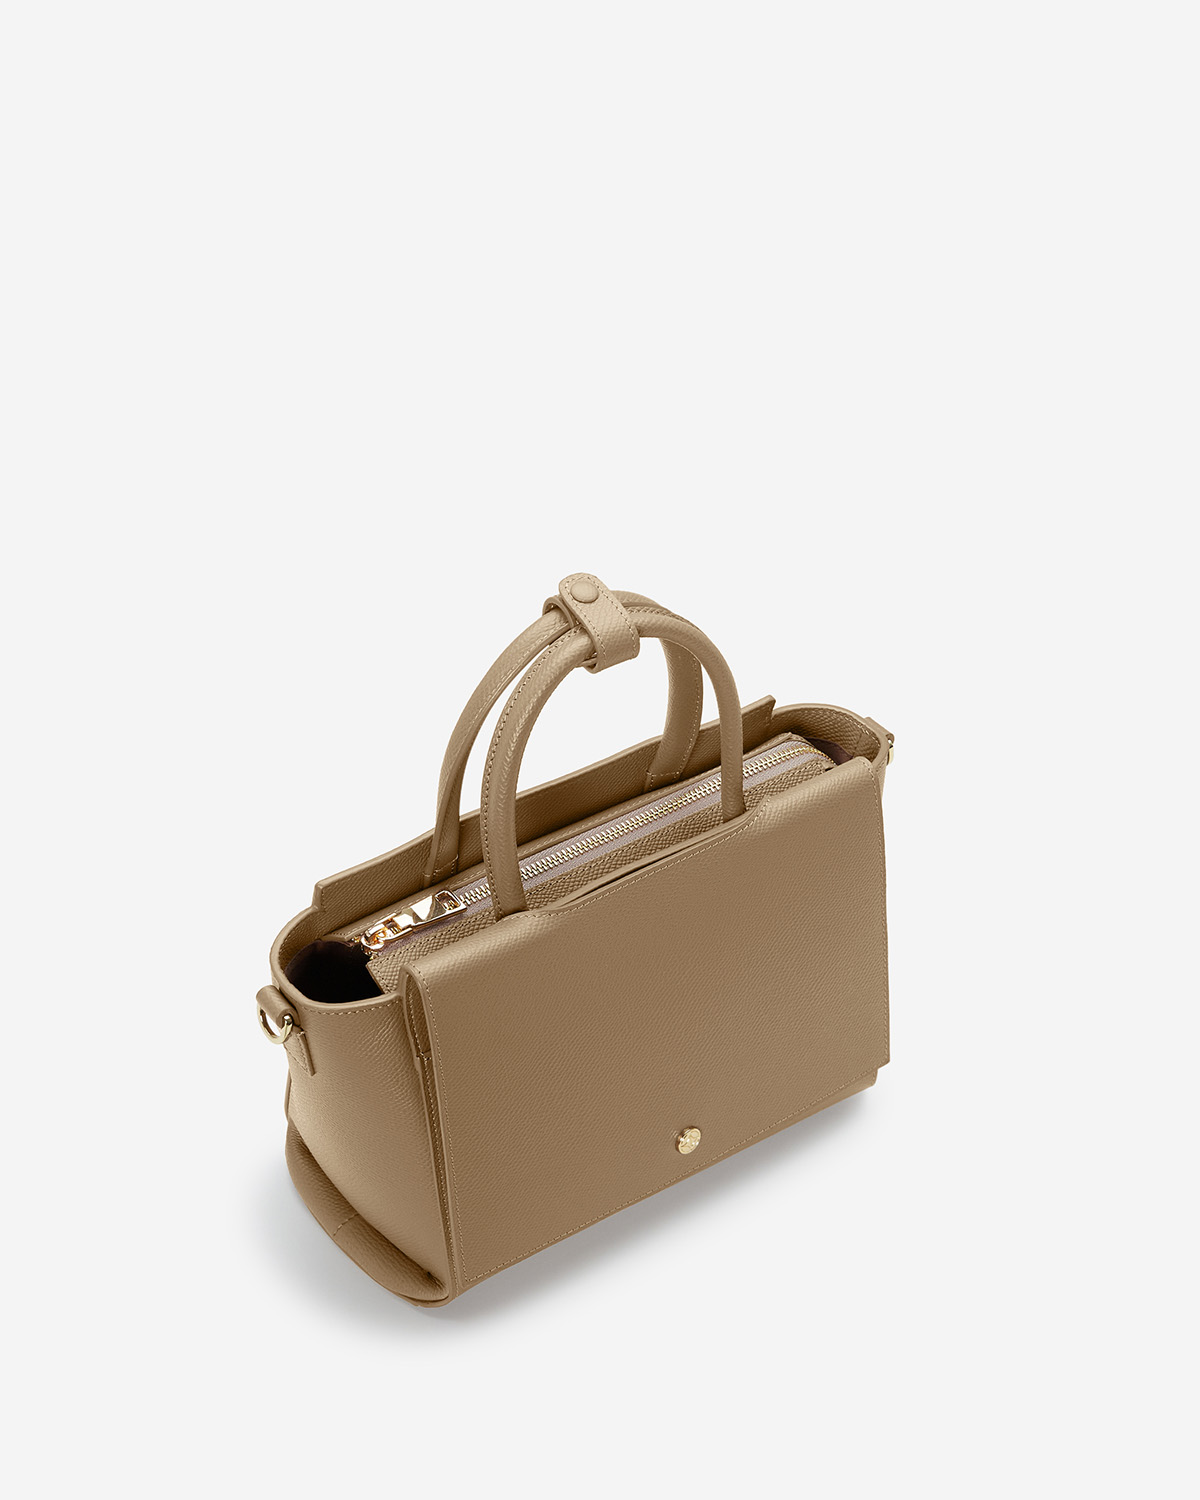 กระเป๋าถือหนังแท้ VERA Heidi Leather Handbag, ไซส์ 28 สี Martini Olive